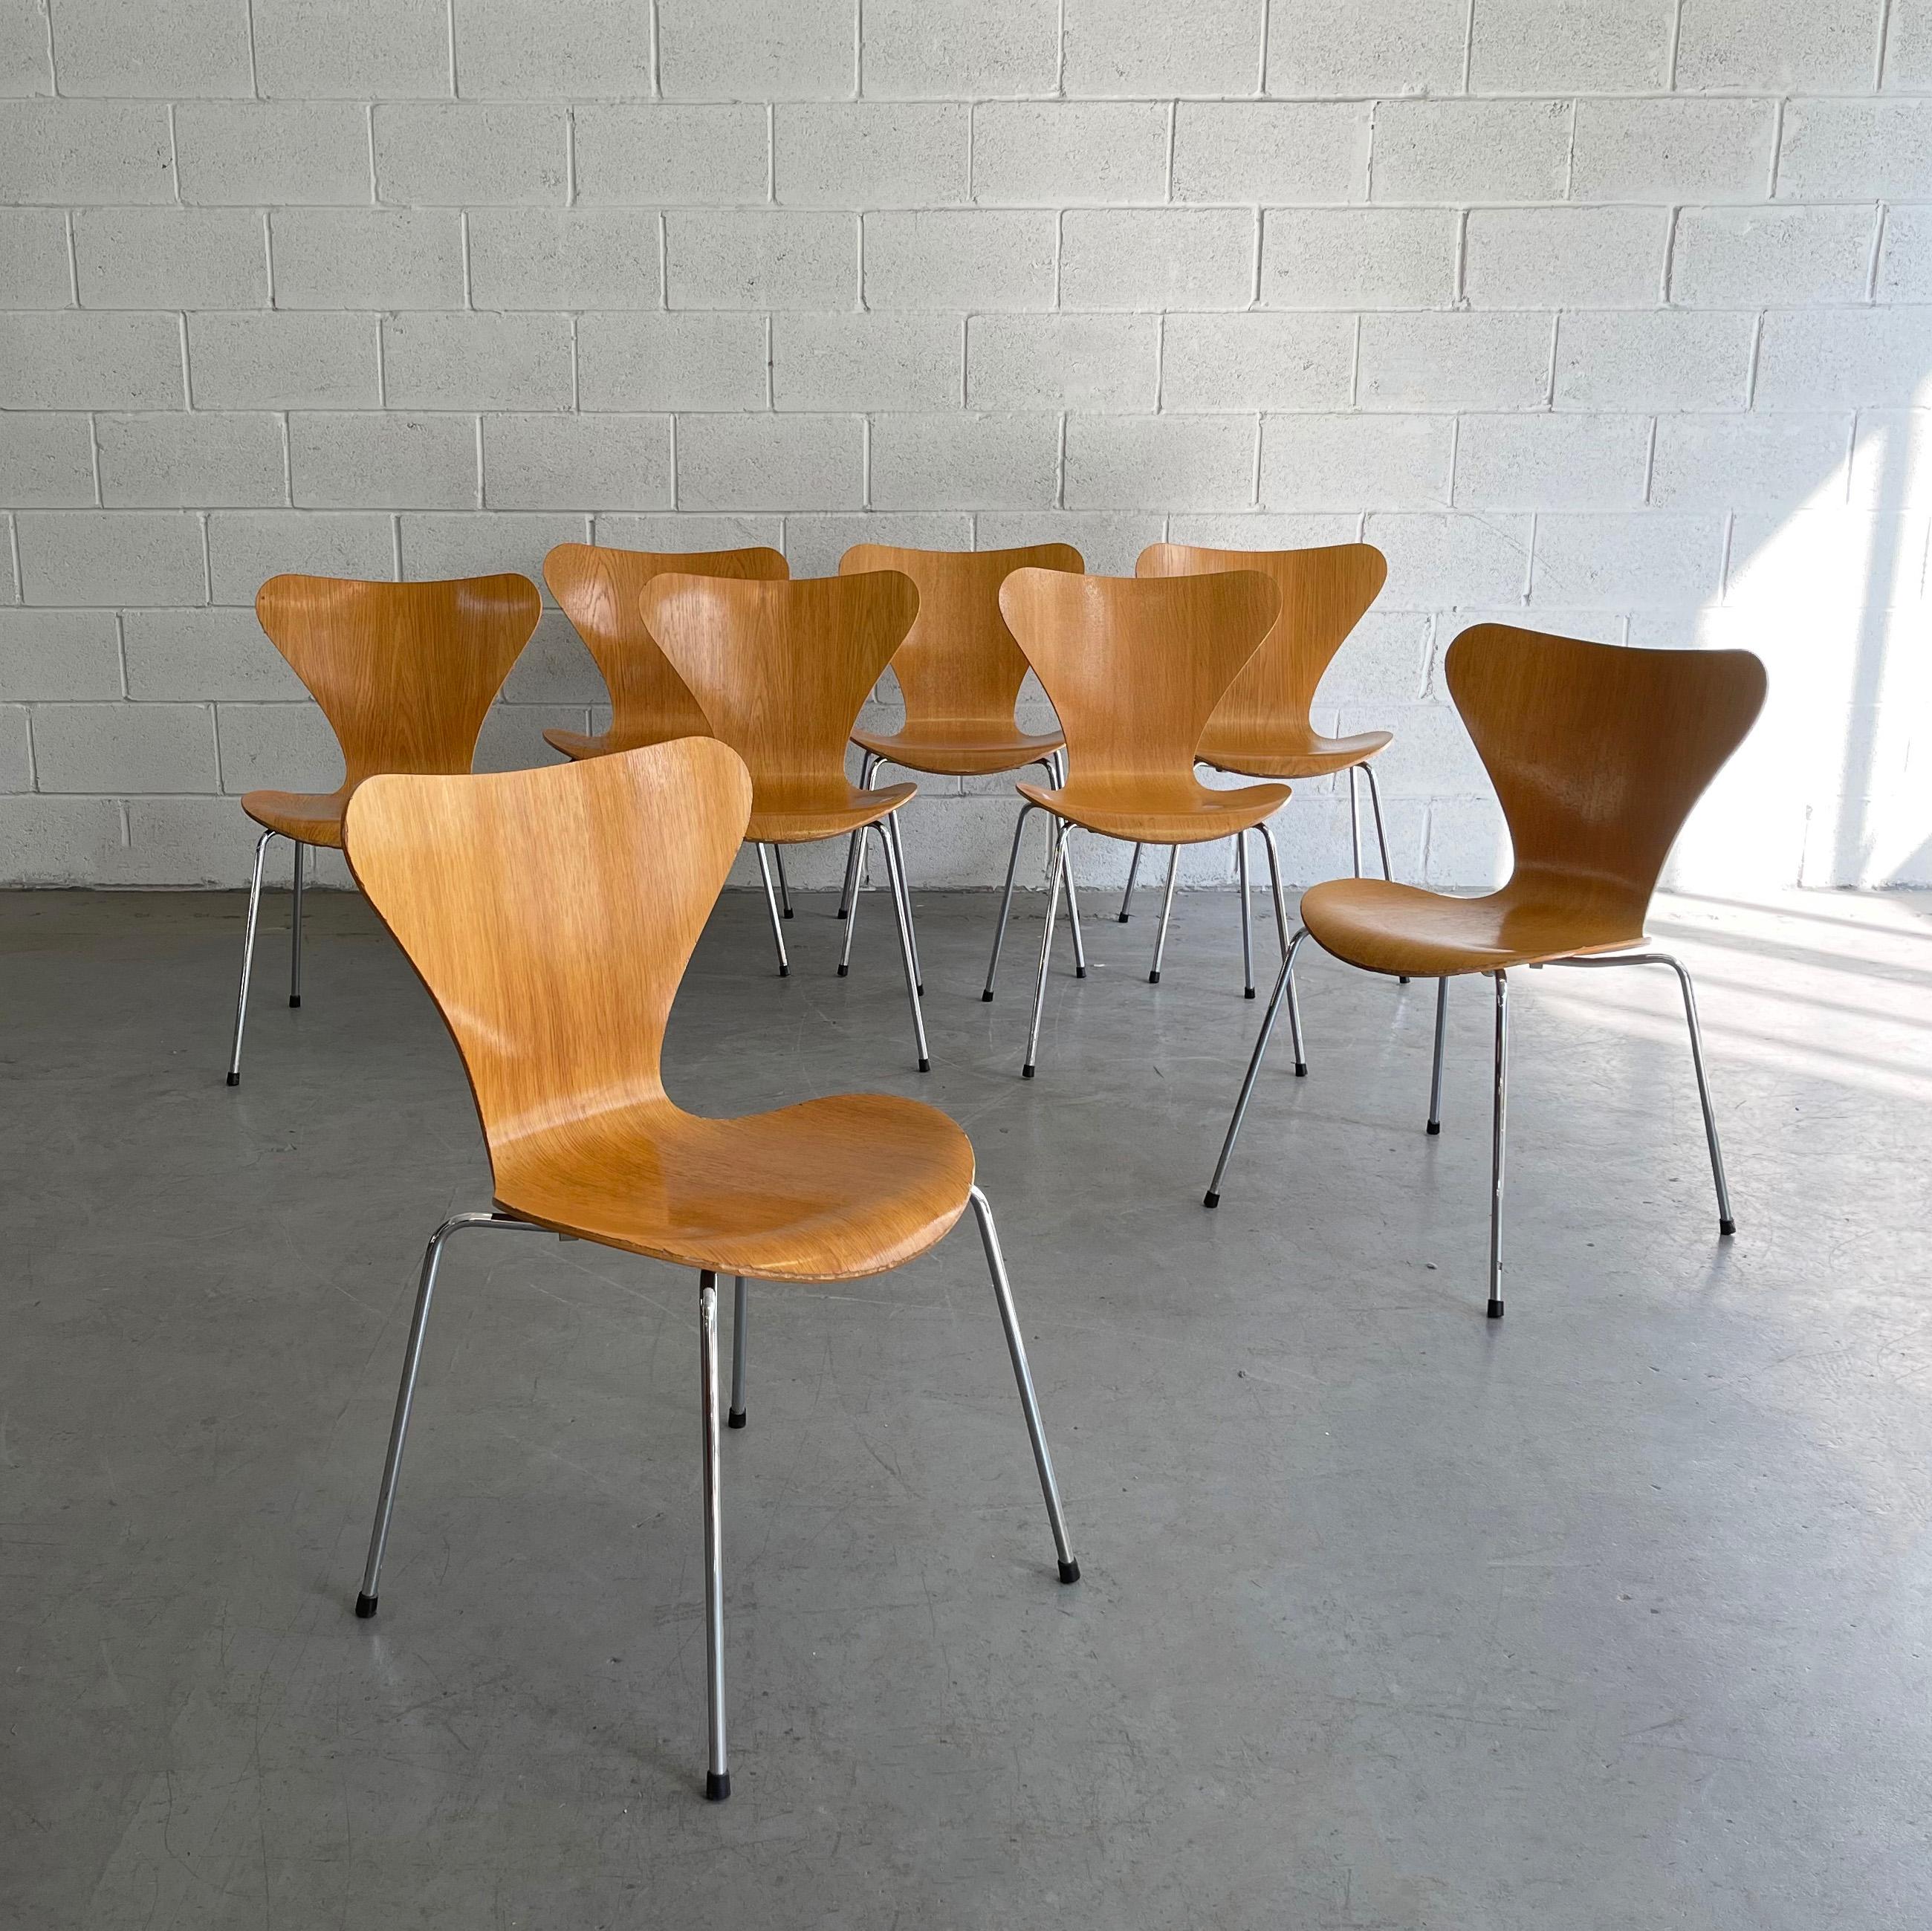 Ikonische, skandinavische Moderne, Serie 7, Modell 3107 Stühle von Arne Jacobsen für Fritz Hansen. Perfekt für den Einsatz im Esszimmer oder im Büro/Schreibtisch. Es sind 6 stapelbare Stühle erhältlich, 2 aus Esche und 4 aus Ahorn. Sie werden